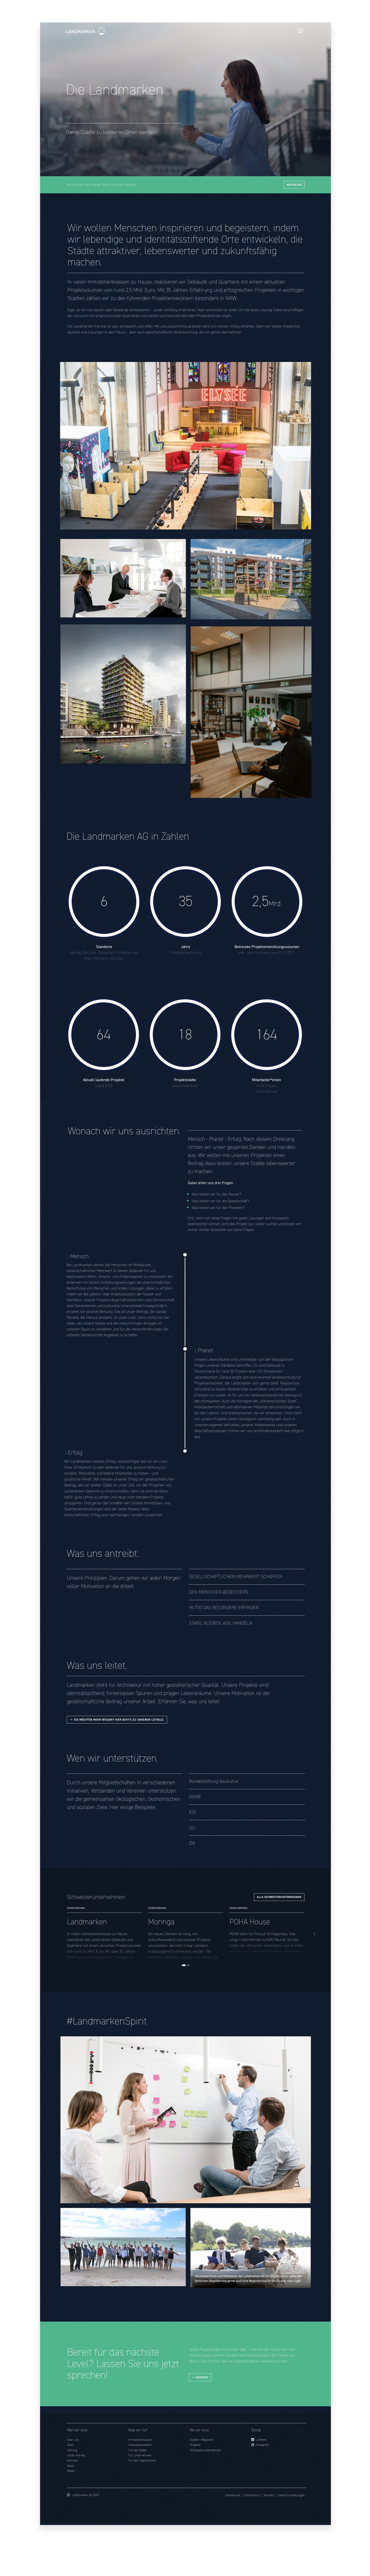 Koenigspunkt_Agentur_web_solutions_webdesign_Koeln_Referenzen_Landmarken_Ansicht_webseite.jpg
				